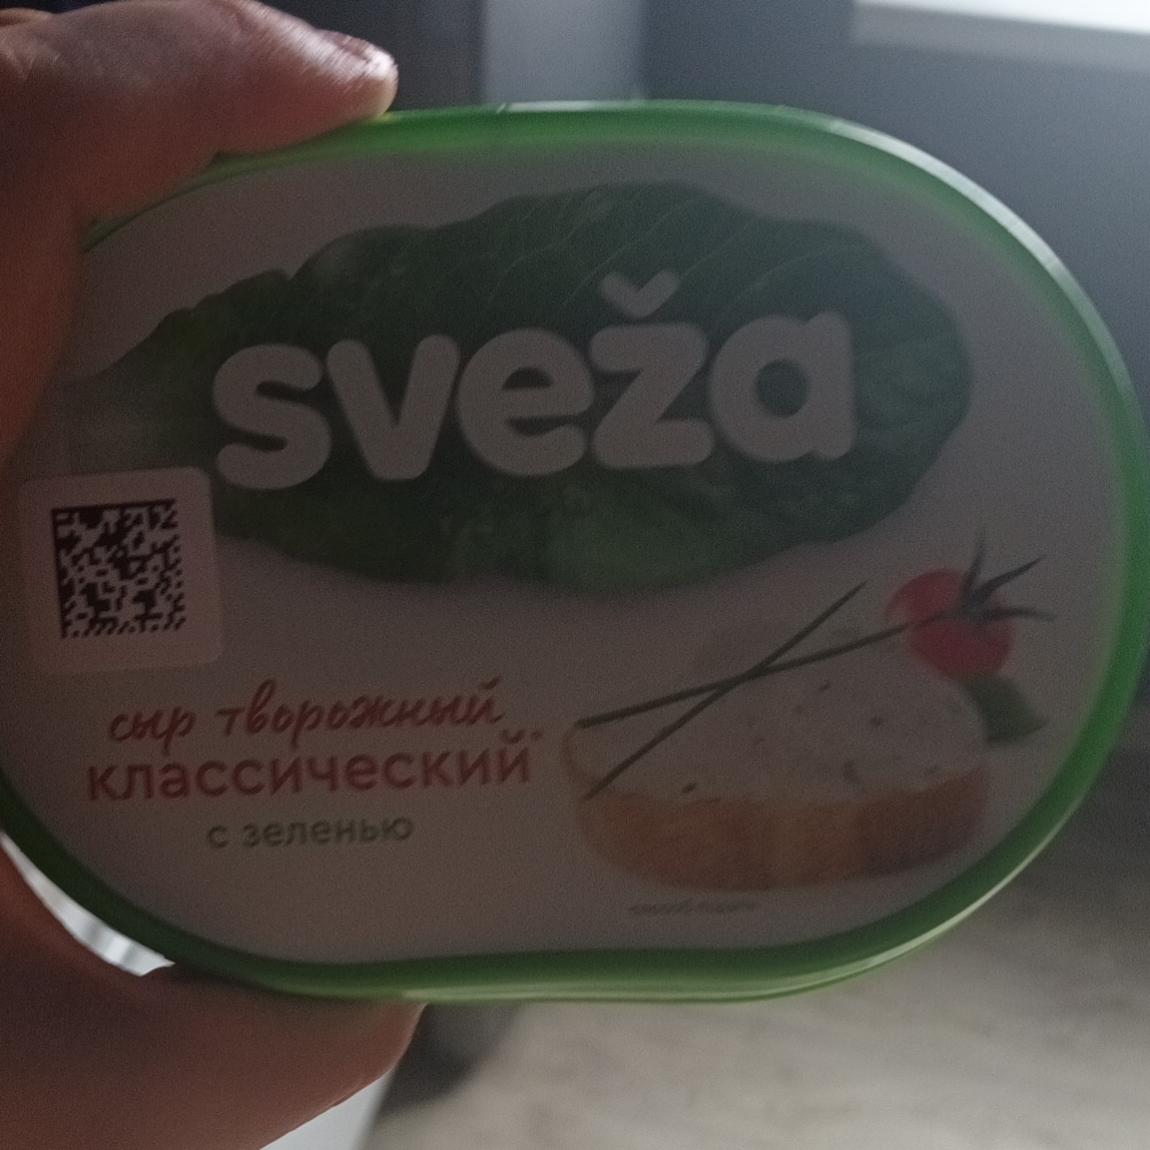 Фото - Сыр воздушный творожный с зеленью sveza Савушкин